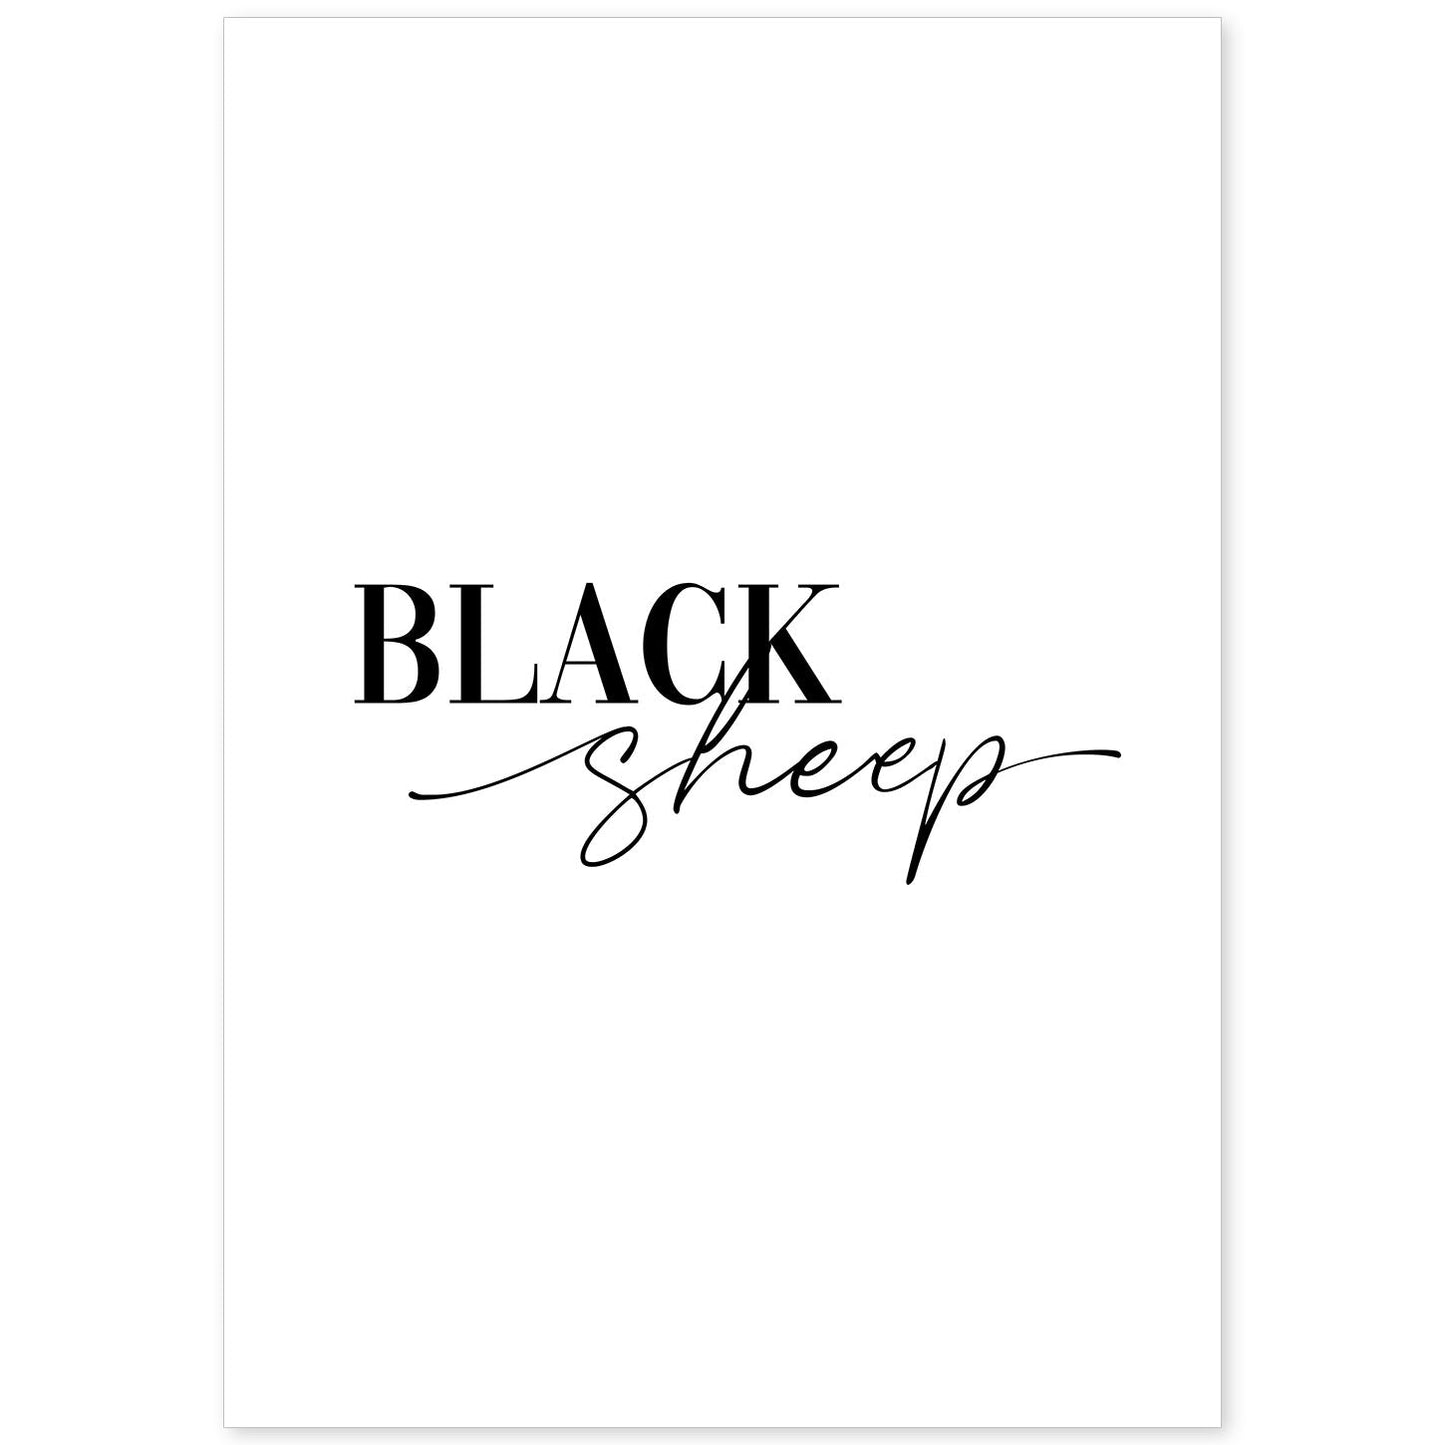 Lamina artistica decorativa con ilustración de black sheep estilo Mensaje inspiracional-Artwork-Nacnic-A4-Sin marco-Nacnic Estudio SL